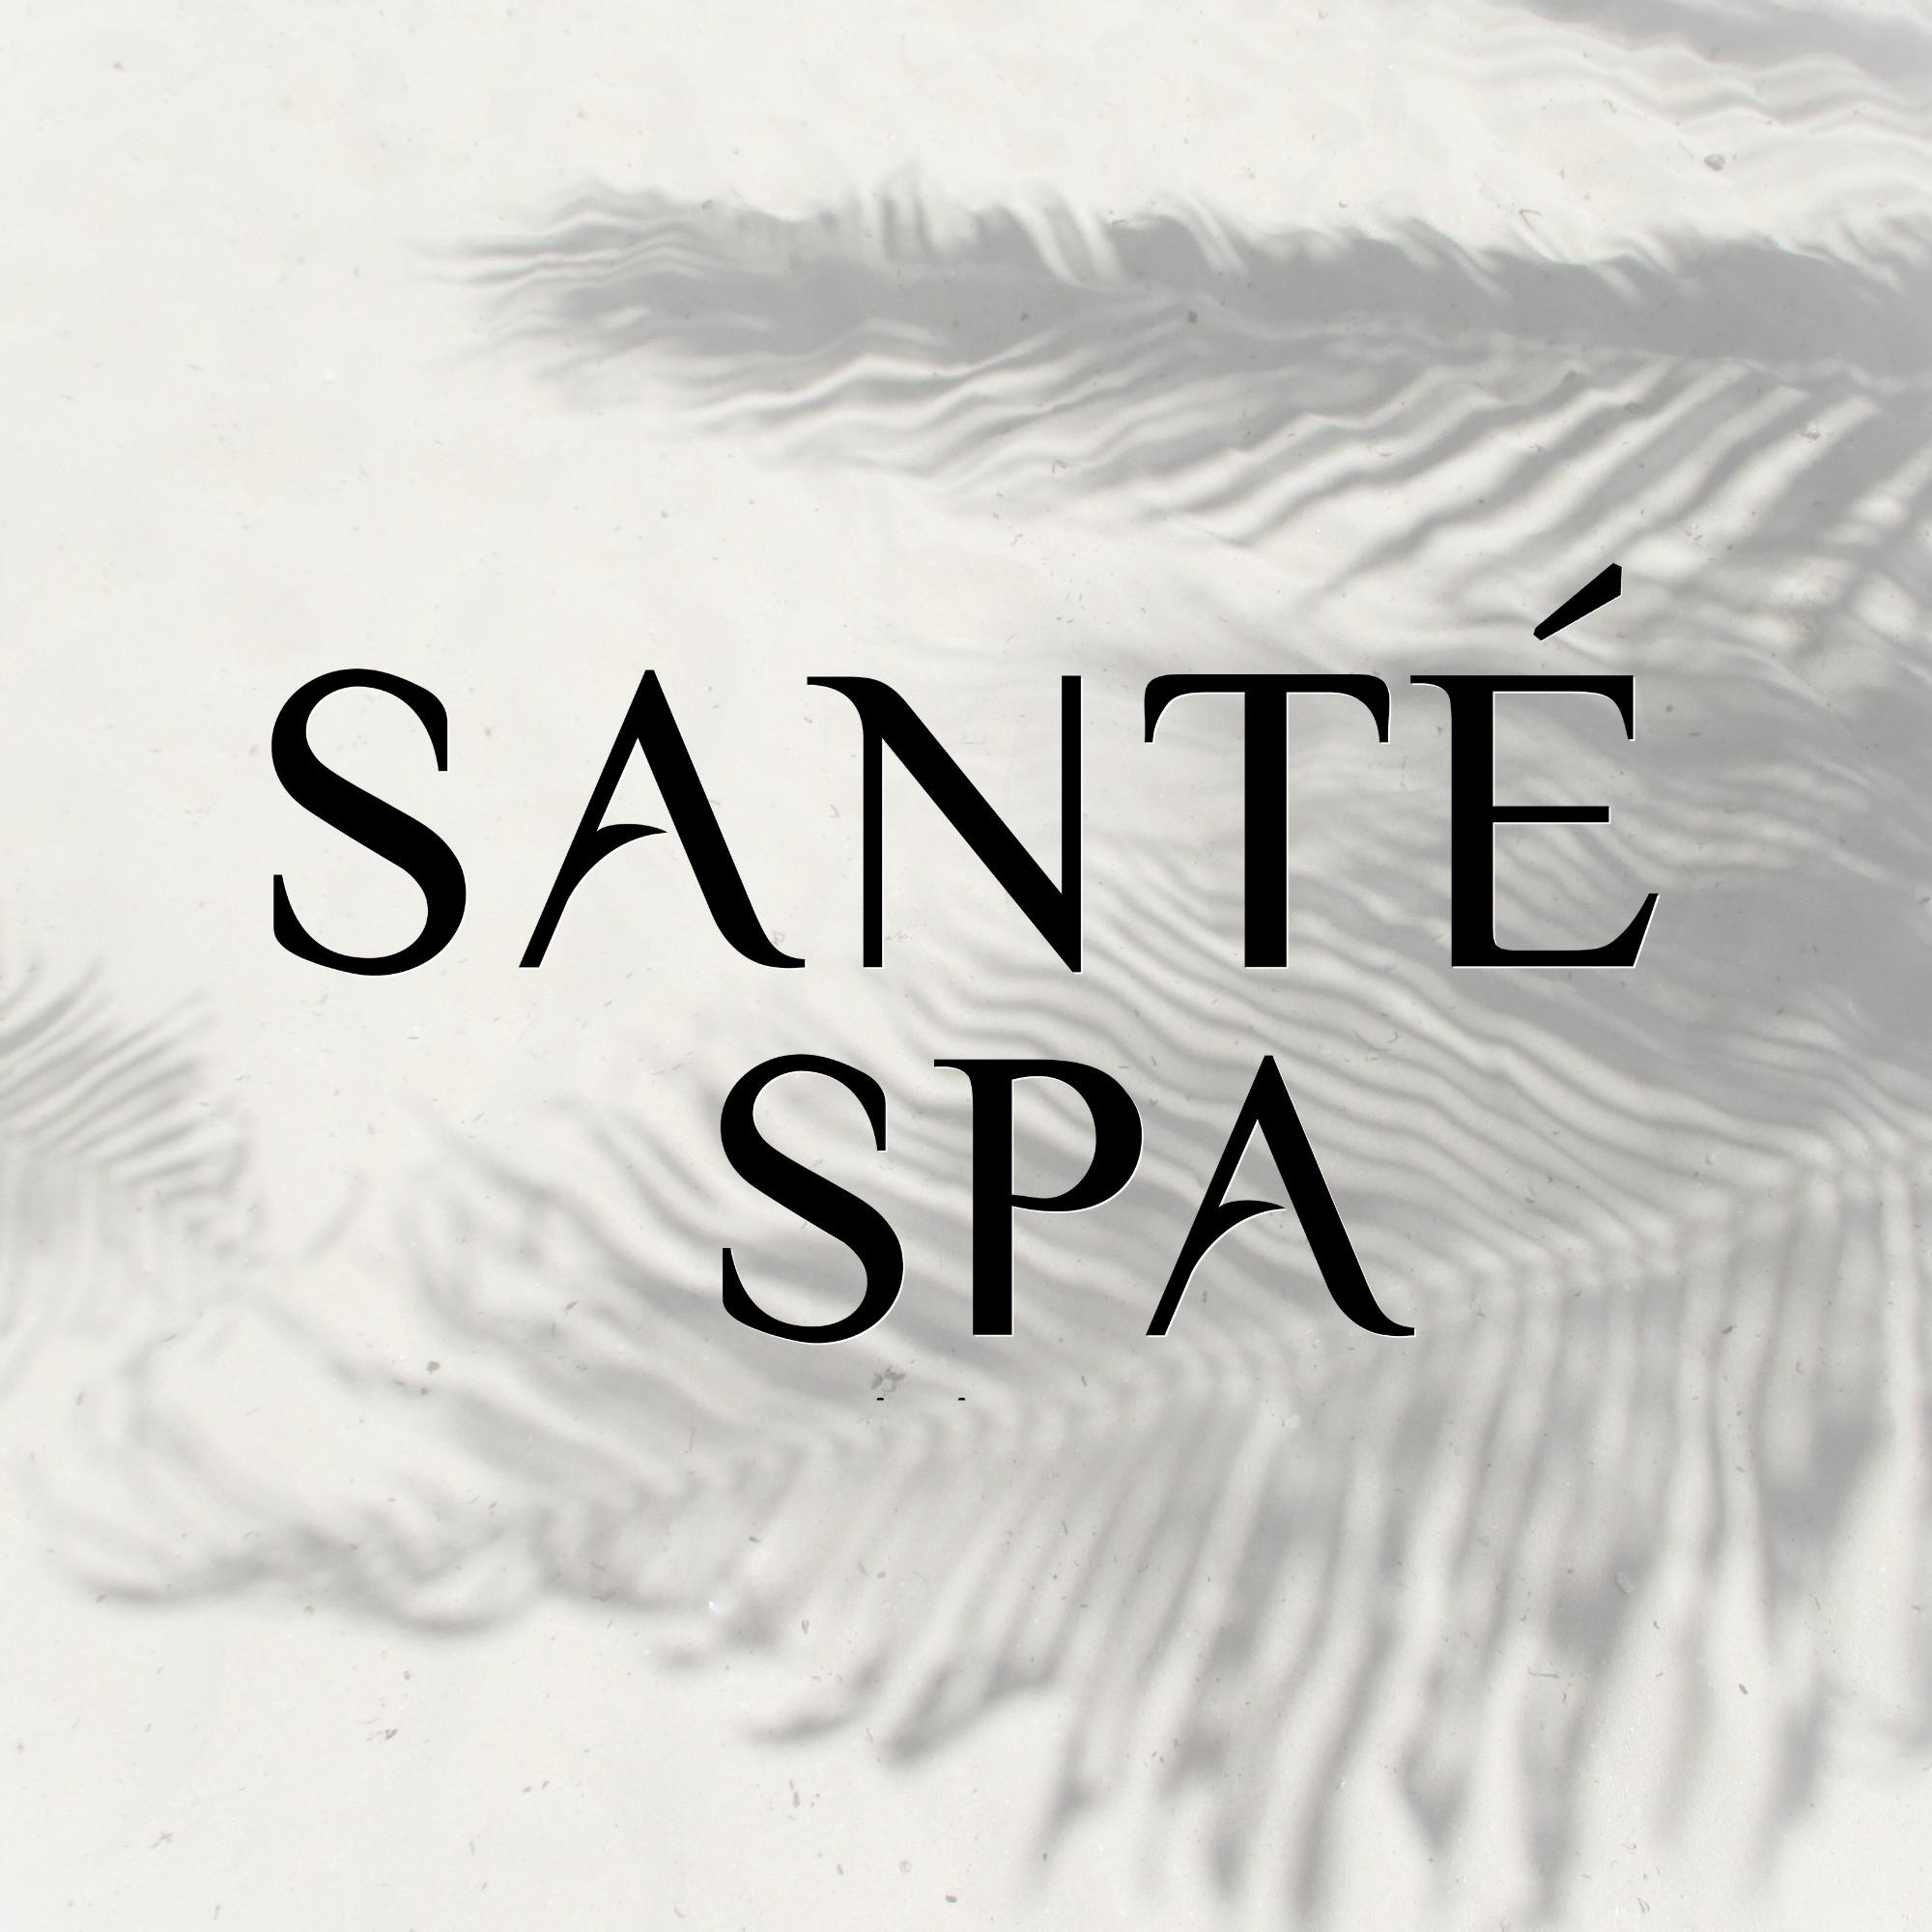 Santé Spa | aesthetics & wellness - Thousand Oaks, CA 91362 - (805)370-0000 | ShowMeLocal.com